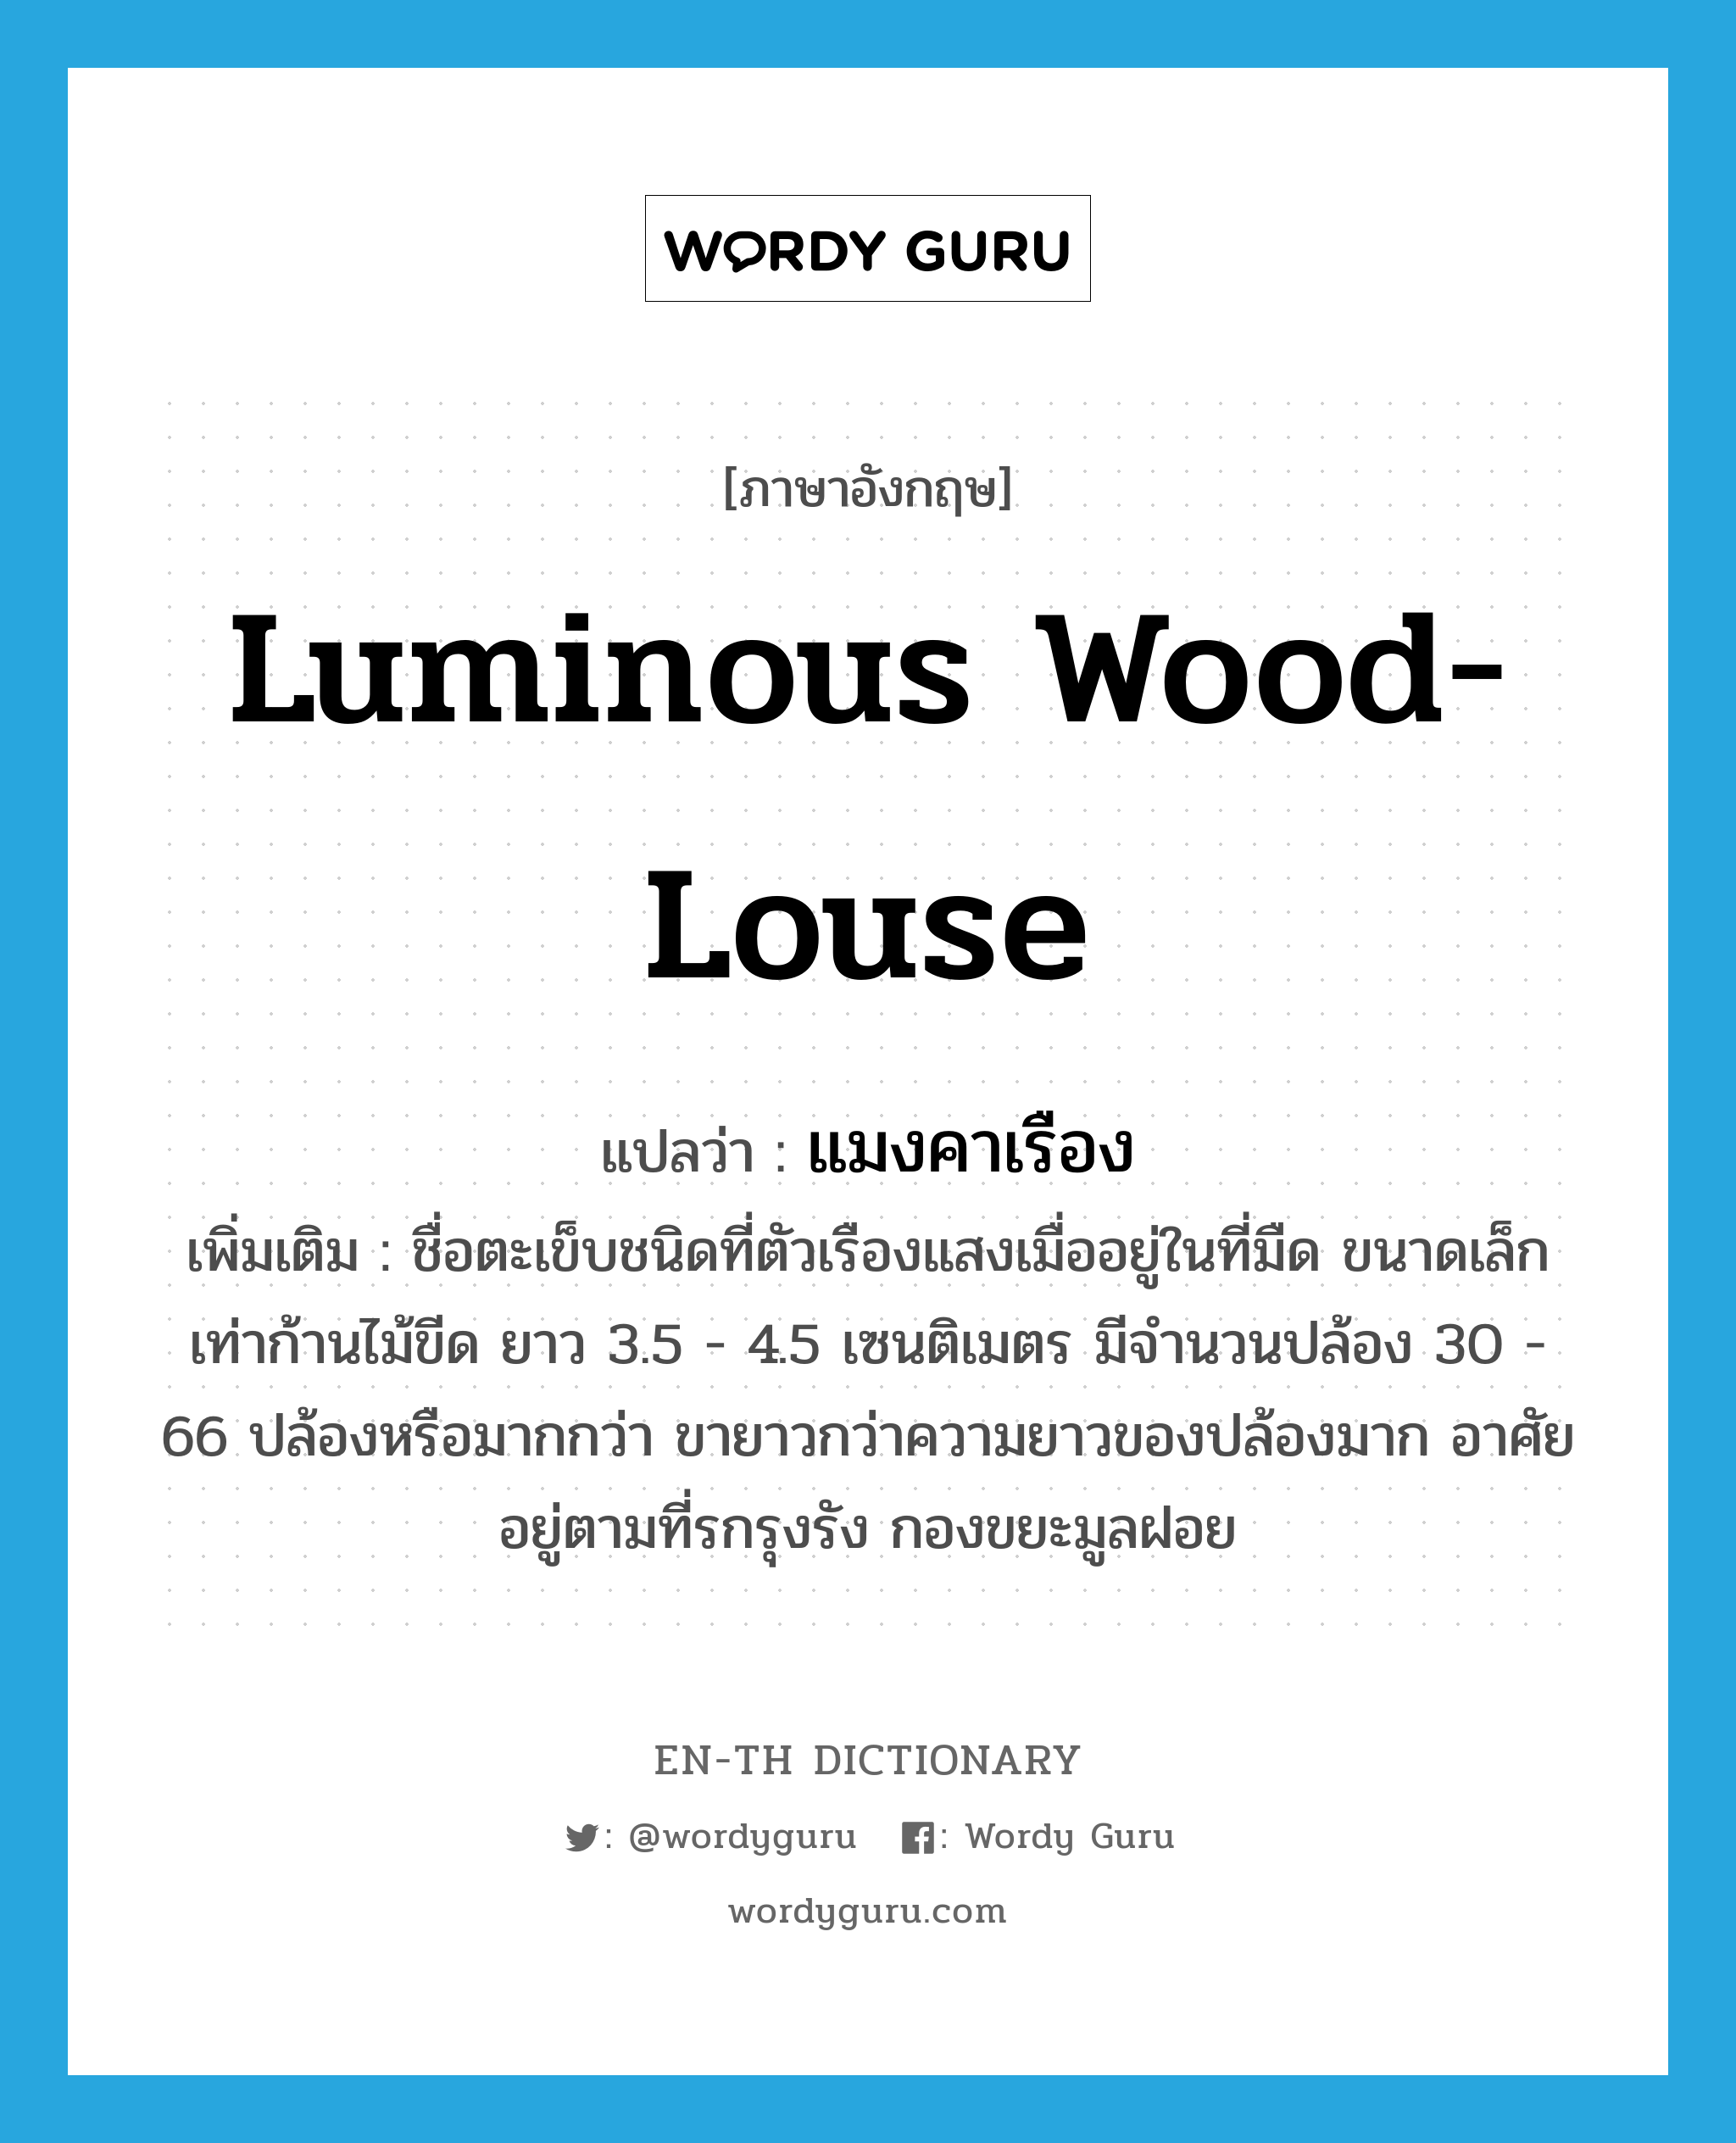 luminous wood-louse แปลว่า?, คำศัพท์ภาษาอังกฤษ luminous wood-louse แปลว่า แมงคาเรือง ประเภท N เพิ่มเติม ชื่อตะเข็บชนิดที่ตัวเรืองแสงเมื่ออยู่ในที่มืด ขนาดเล็กเท่าก้านไม้ขีด ยาว 3.5 - 4.5 เซนติเมตร มีจำนวนปล้อง 30 - 66 ปล้องหรือมากกว่า ขายาวกว่าความยาวของปล้องมาก อาศัยอยู่ตามที่รกรุงรัง กองขยะมูลฝอย หมวด N